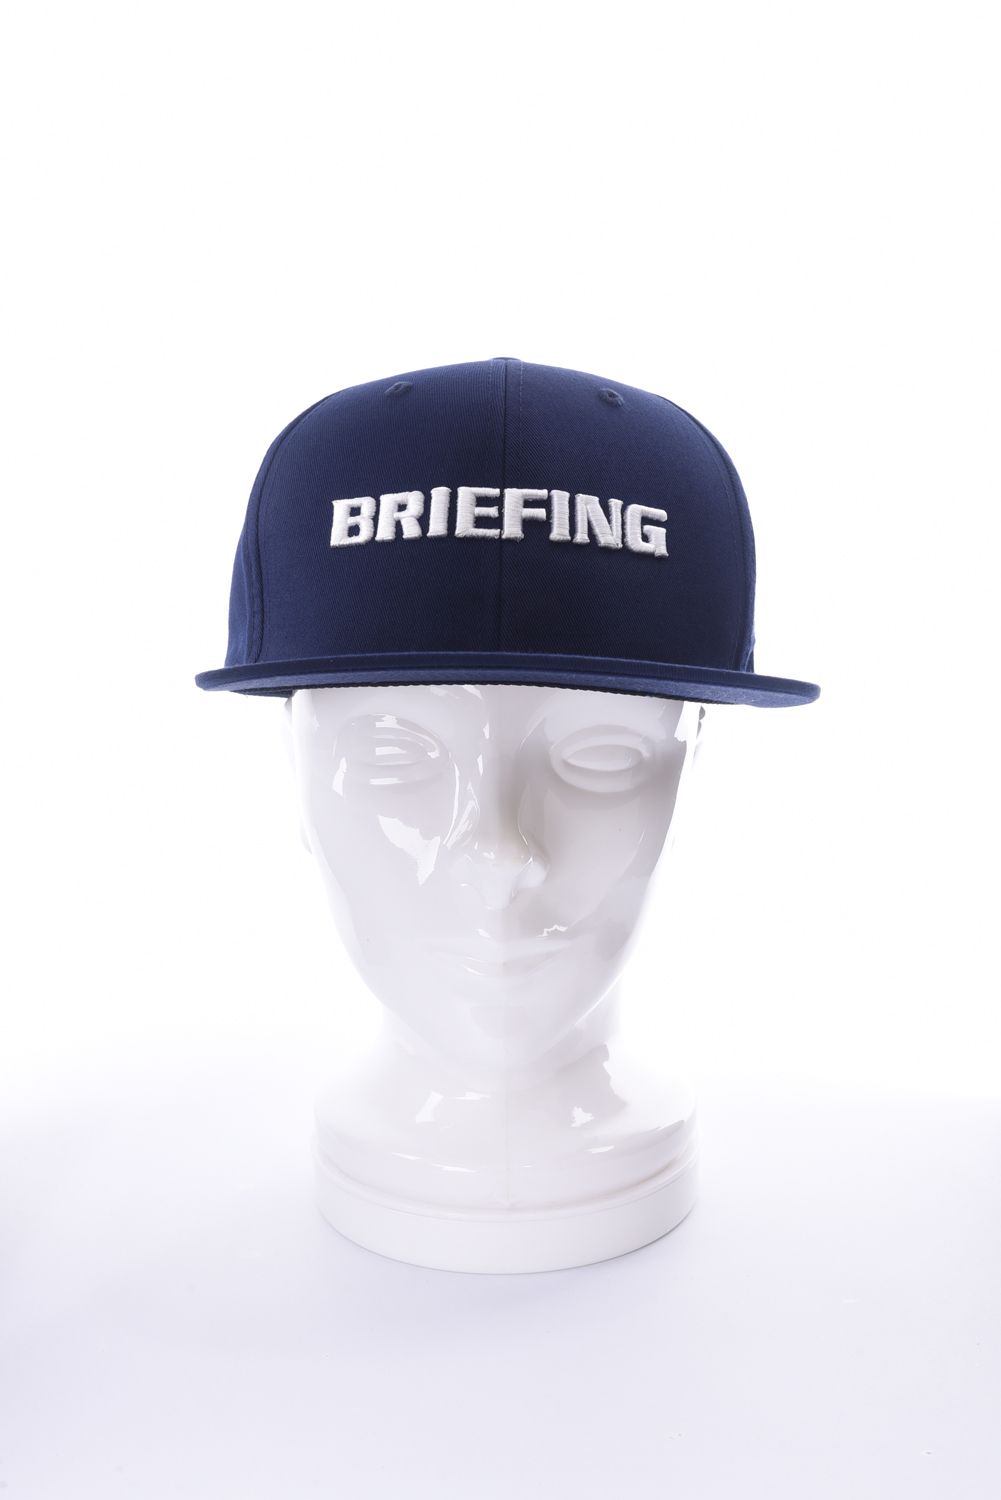 BRIEFING - MENS BASIC FLAT VISOR CAP / ブランドロゴ ベーシック 